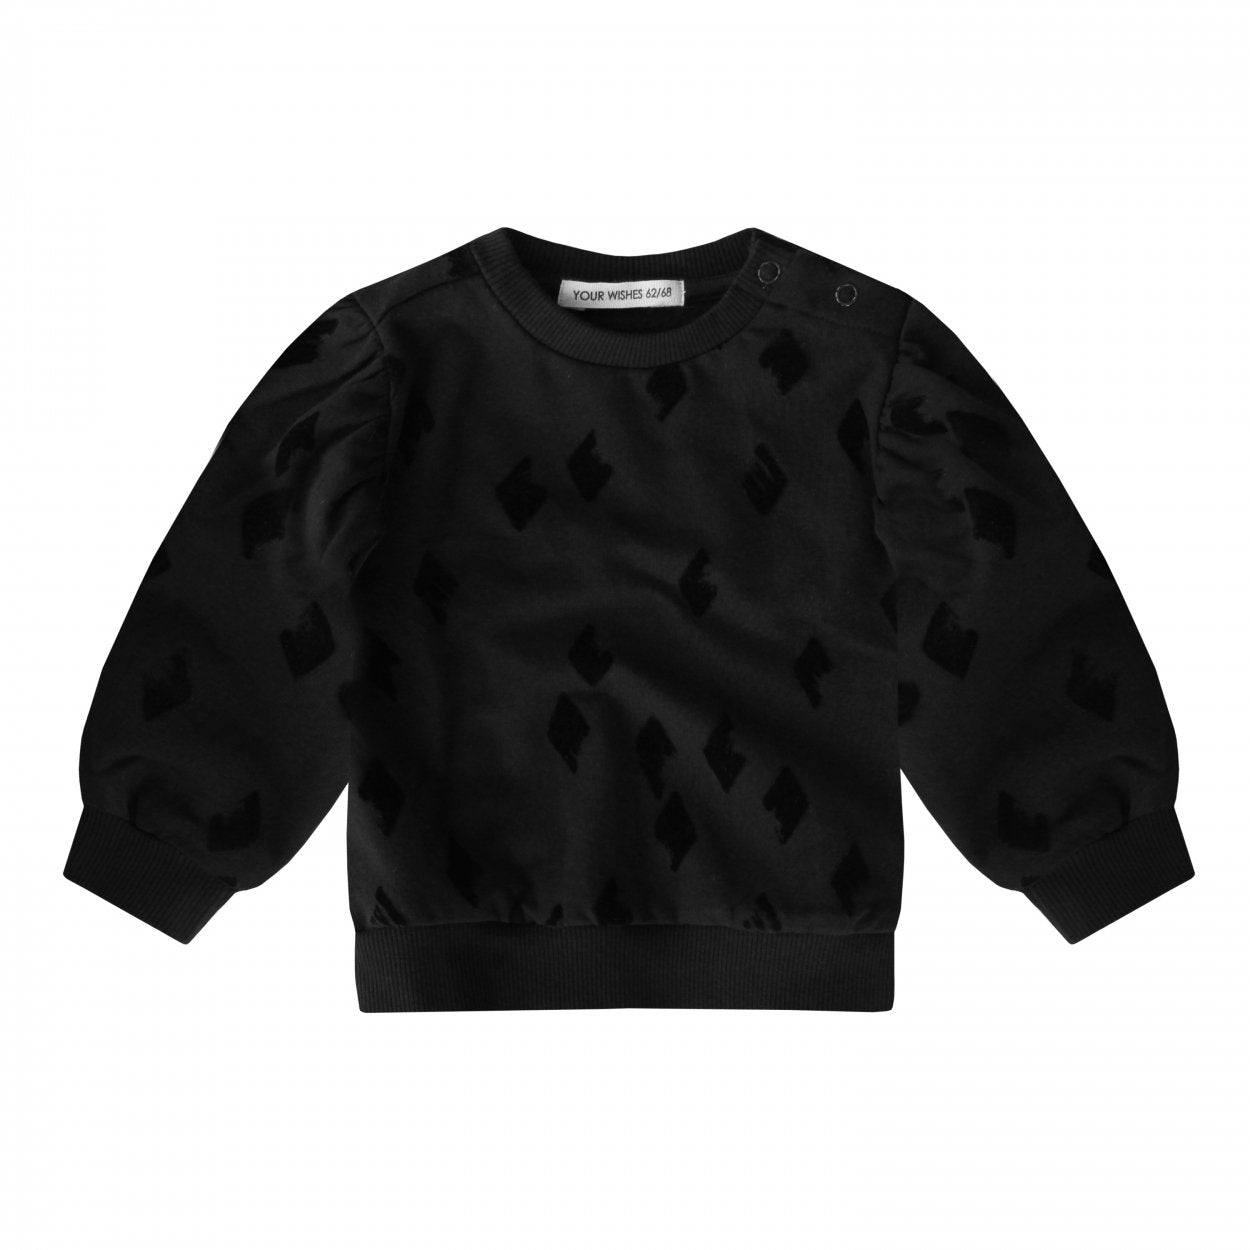 Meisjes Sweater Diamond - Bentley van Your Wishes in de kleur Black in maat 122/128.